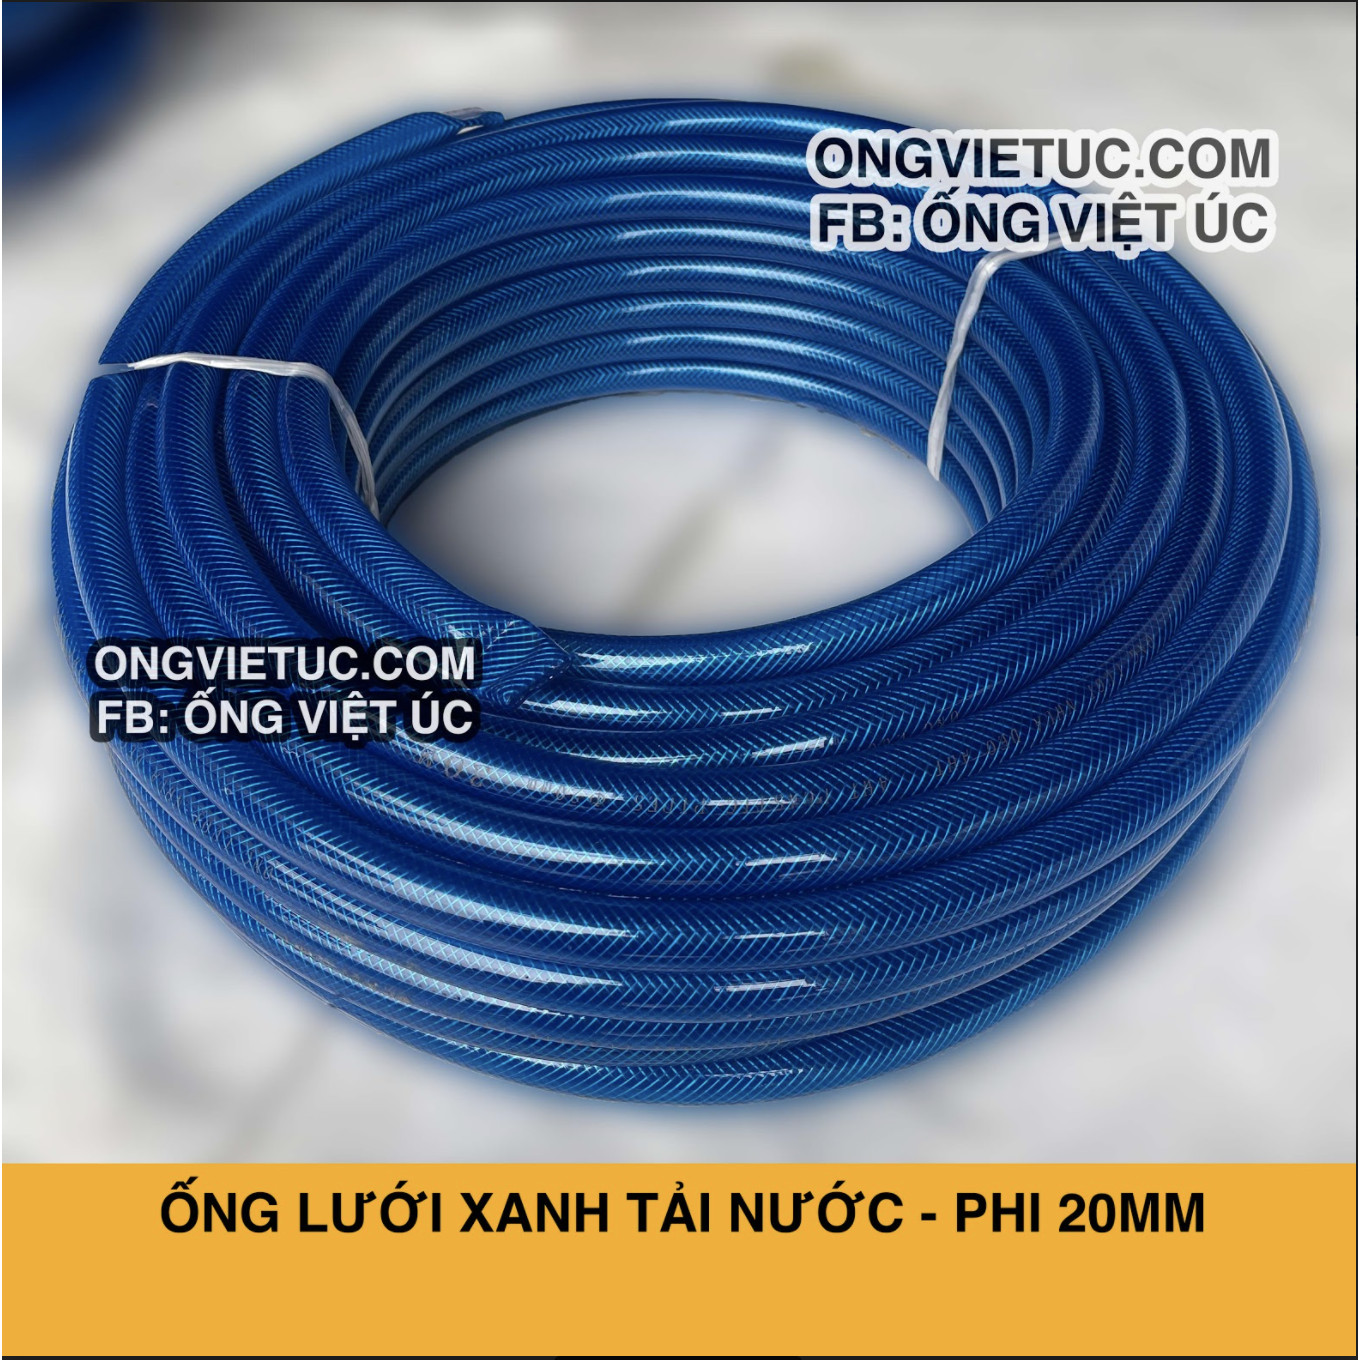 Ống nhựa lưới xanh Việt Úc Phi 20mm - Cuộn 50m - hàng chính hãng AHT